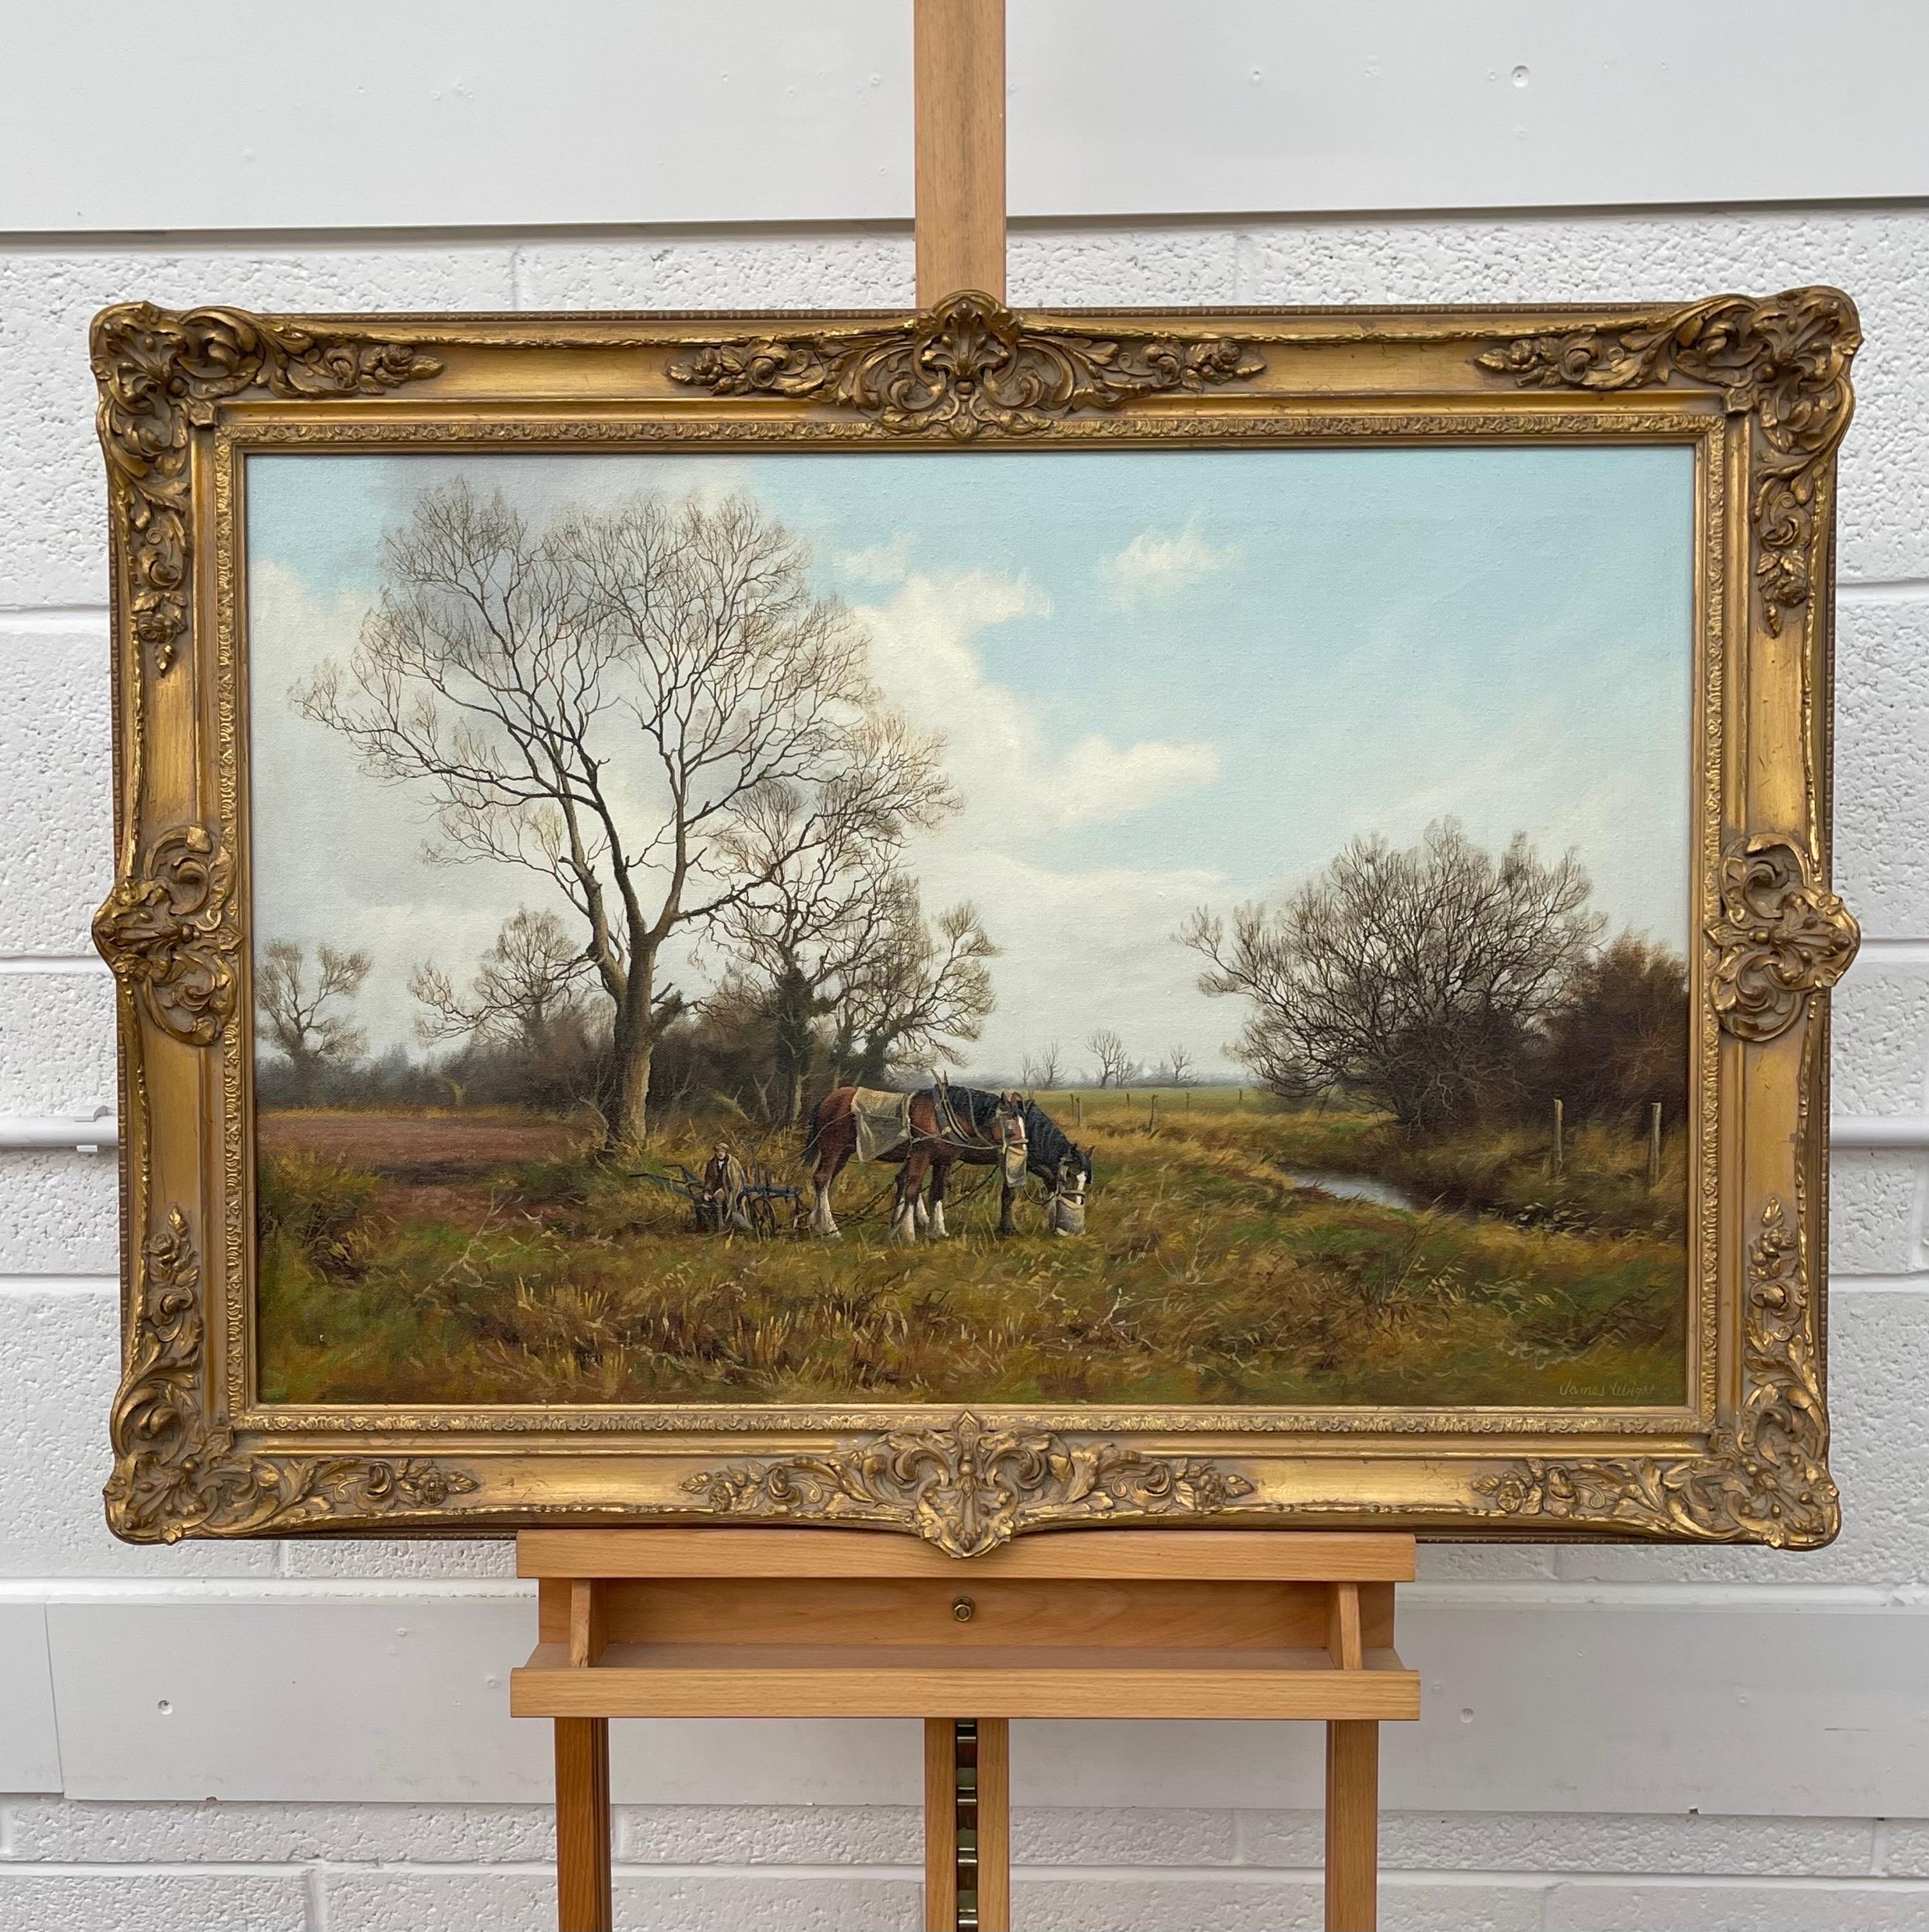 Traditionelles Vintage Ölgemälde der englischen Landschaft mit Pferden und Pflug von einem modernen britischen Künstler

Kunst misst 30 x 20 Zoll
Rahmen misst 36 x 26 Zoll 

James Wright wurde 1935 in Peterborough geboren und lebt heute in